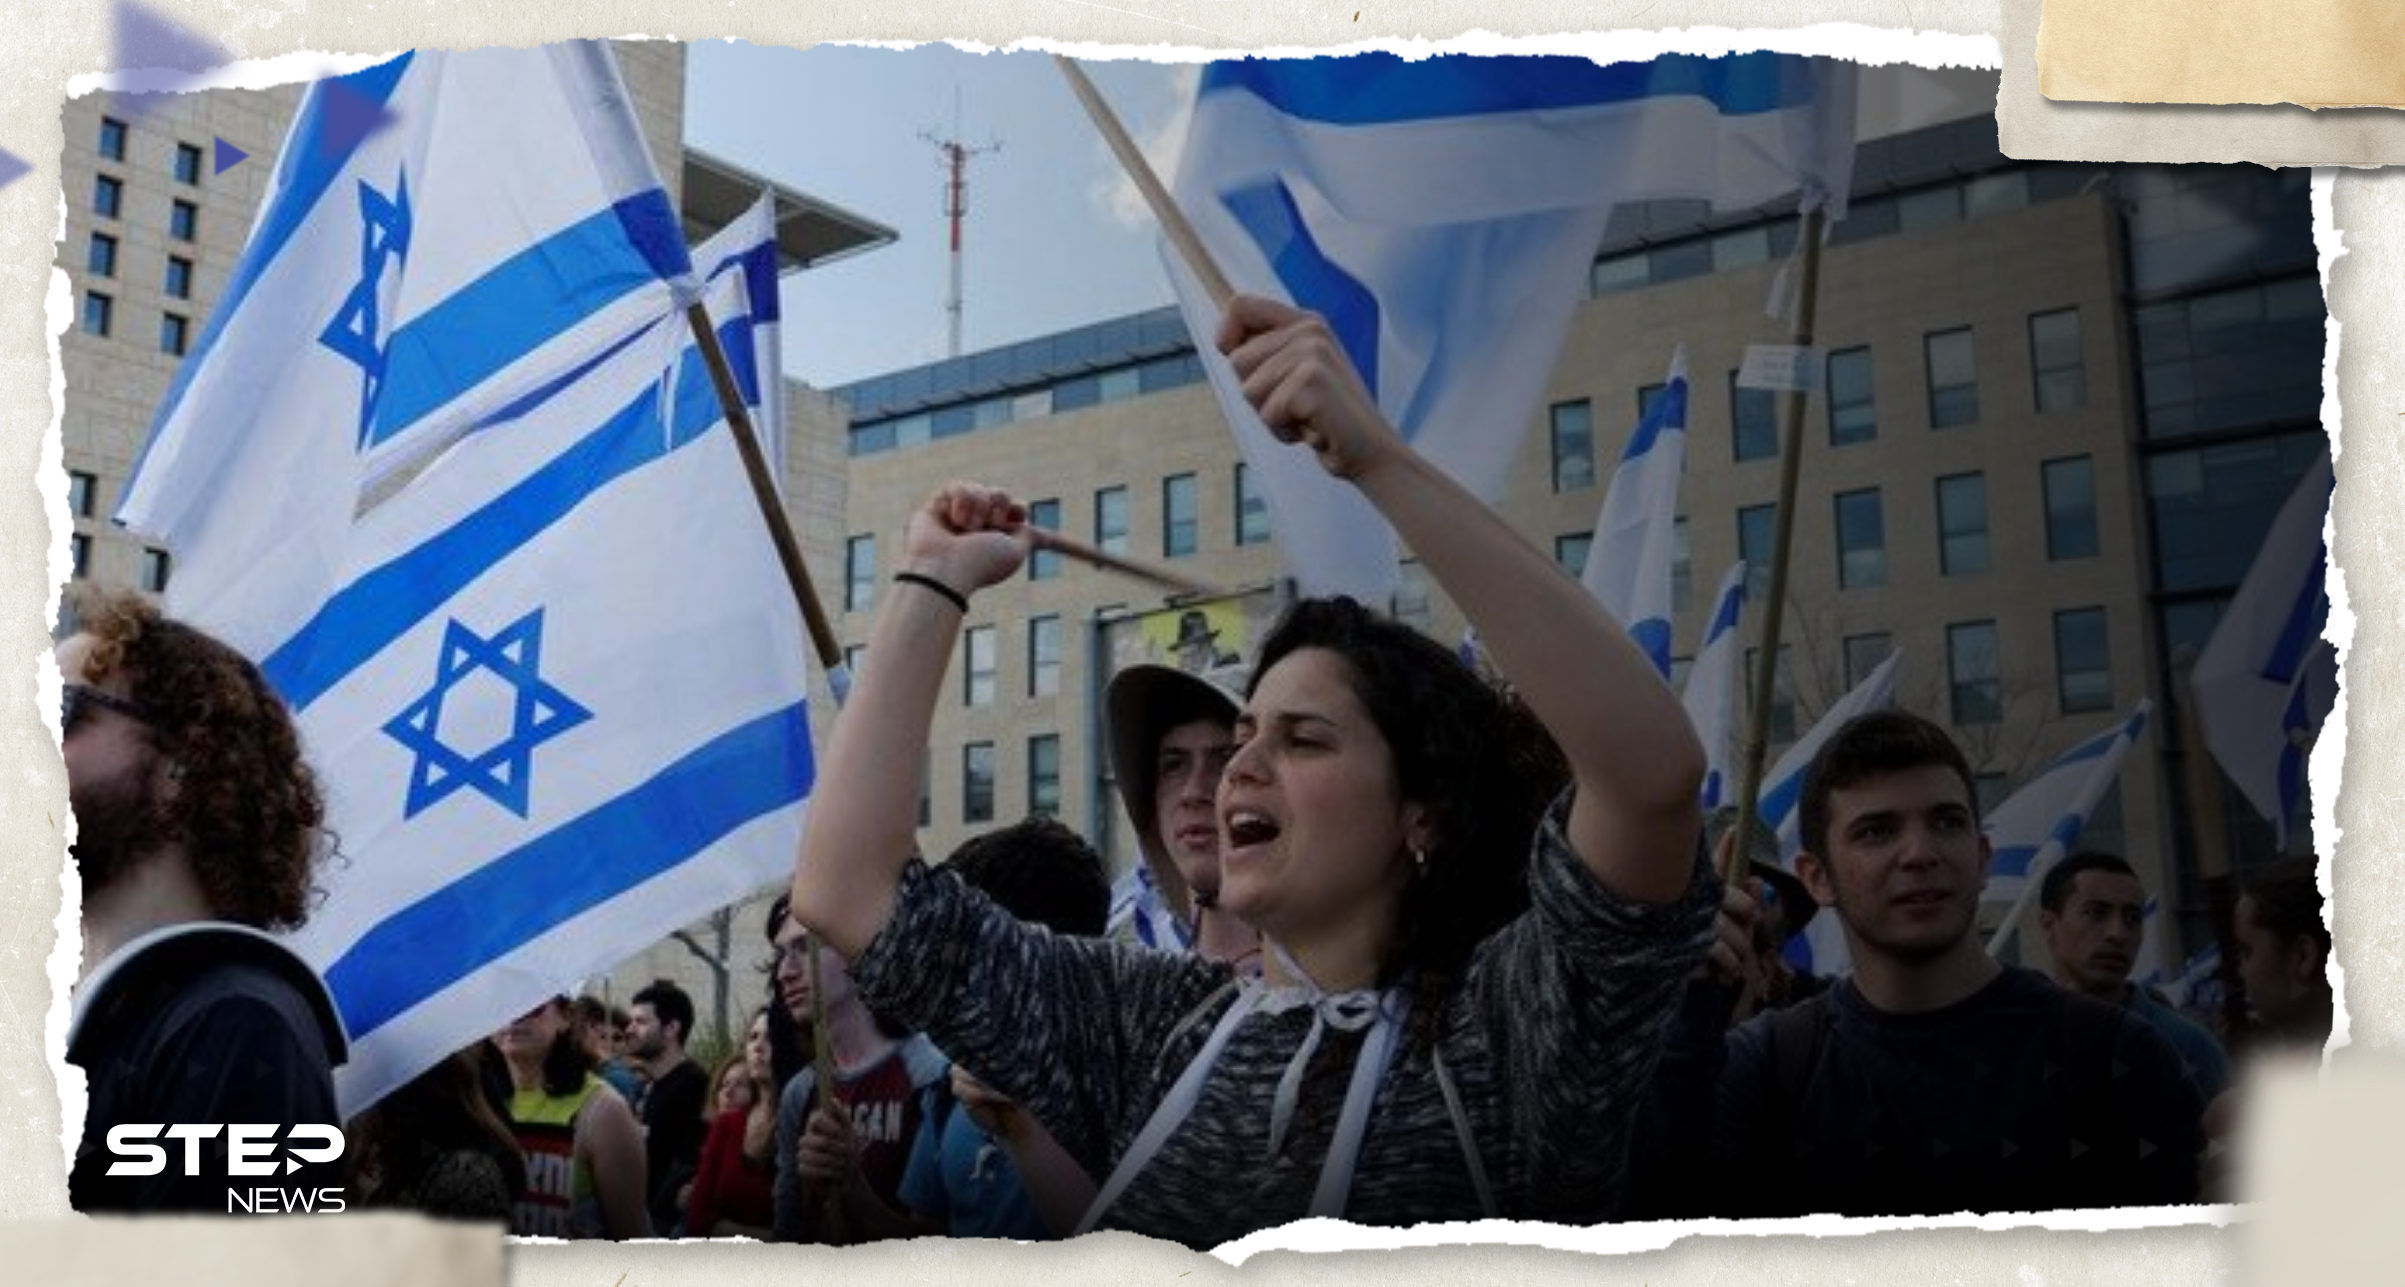 بالفيديو|| إسرائيليات ينضمن احتجاجات "غنائية" نكاية بيهود متشددين يطالبون بفصل الجنسين 